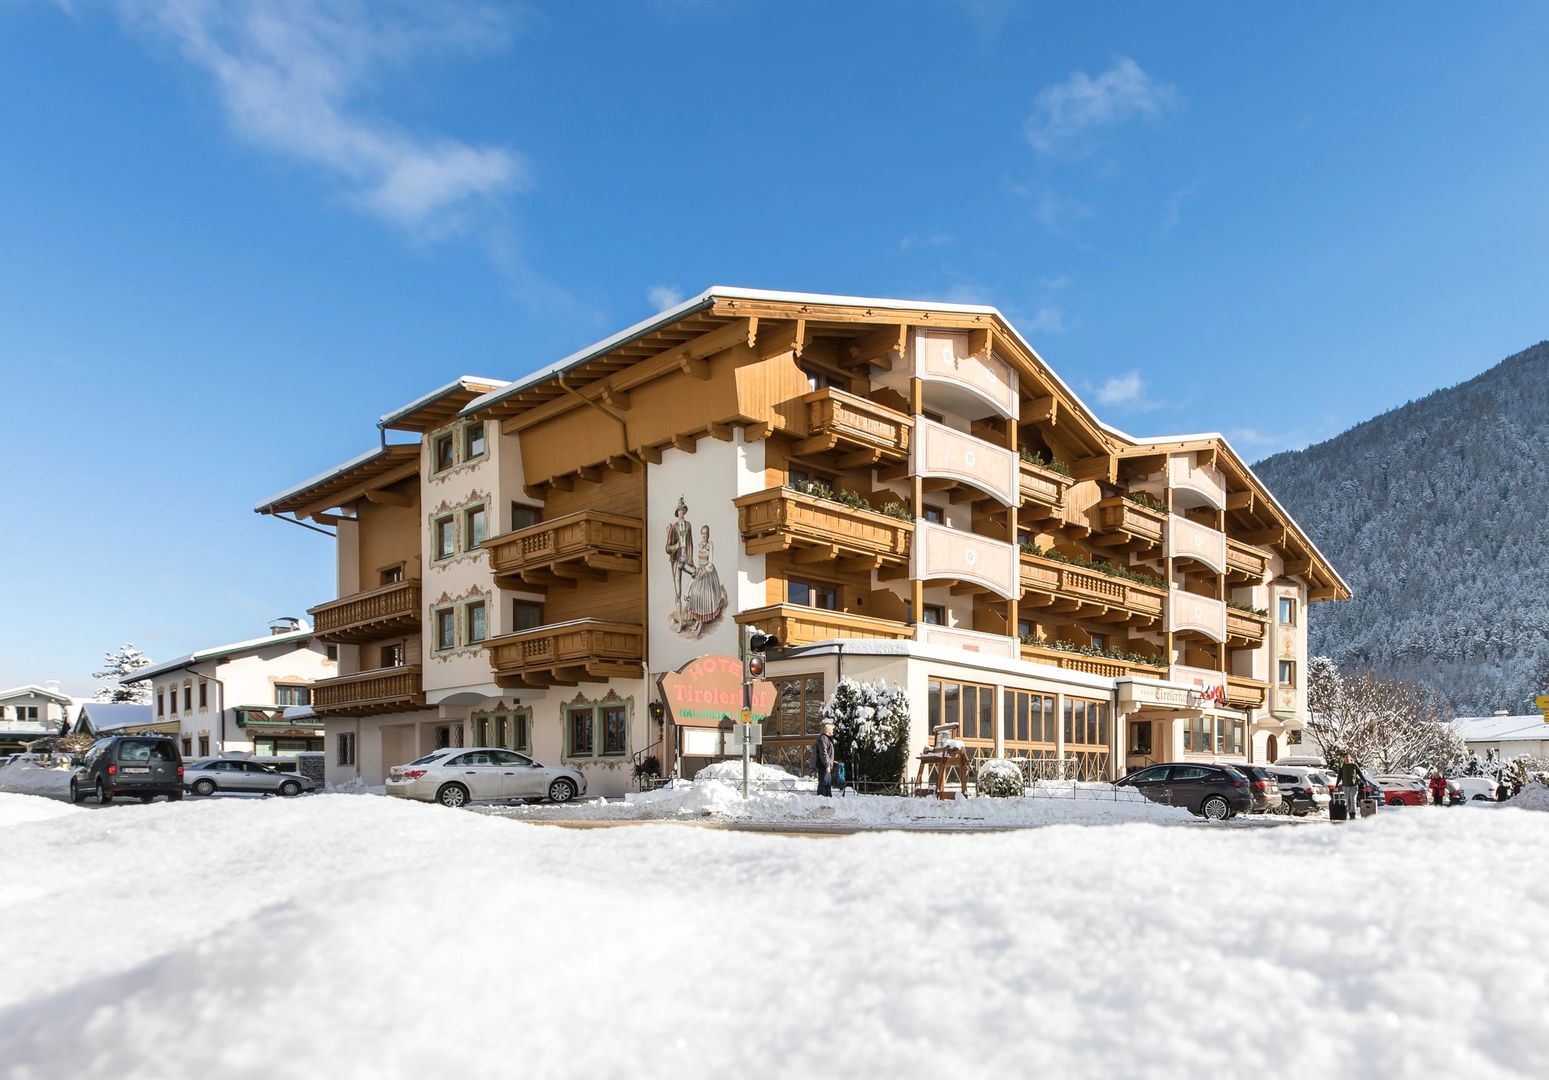 Meer info over Alpenhotel der Tirolerhof  bij Wintertrex